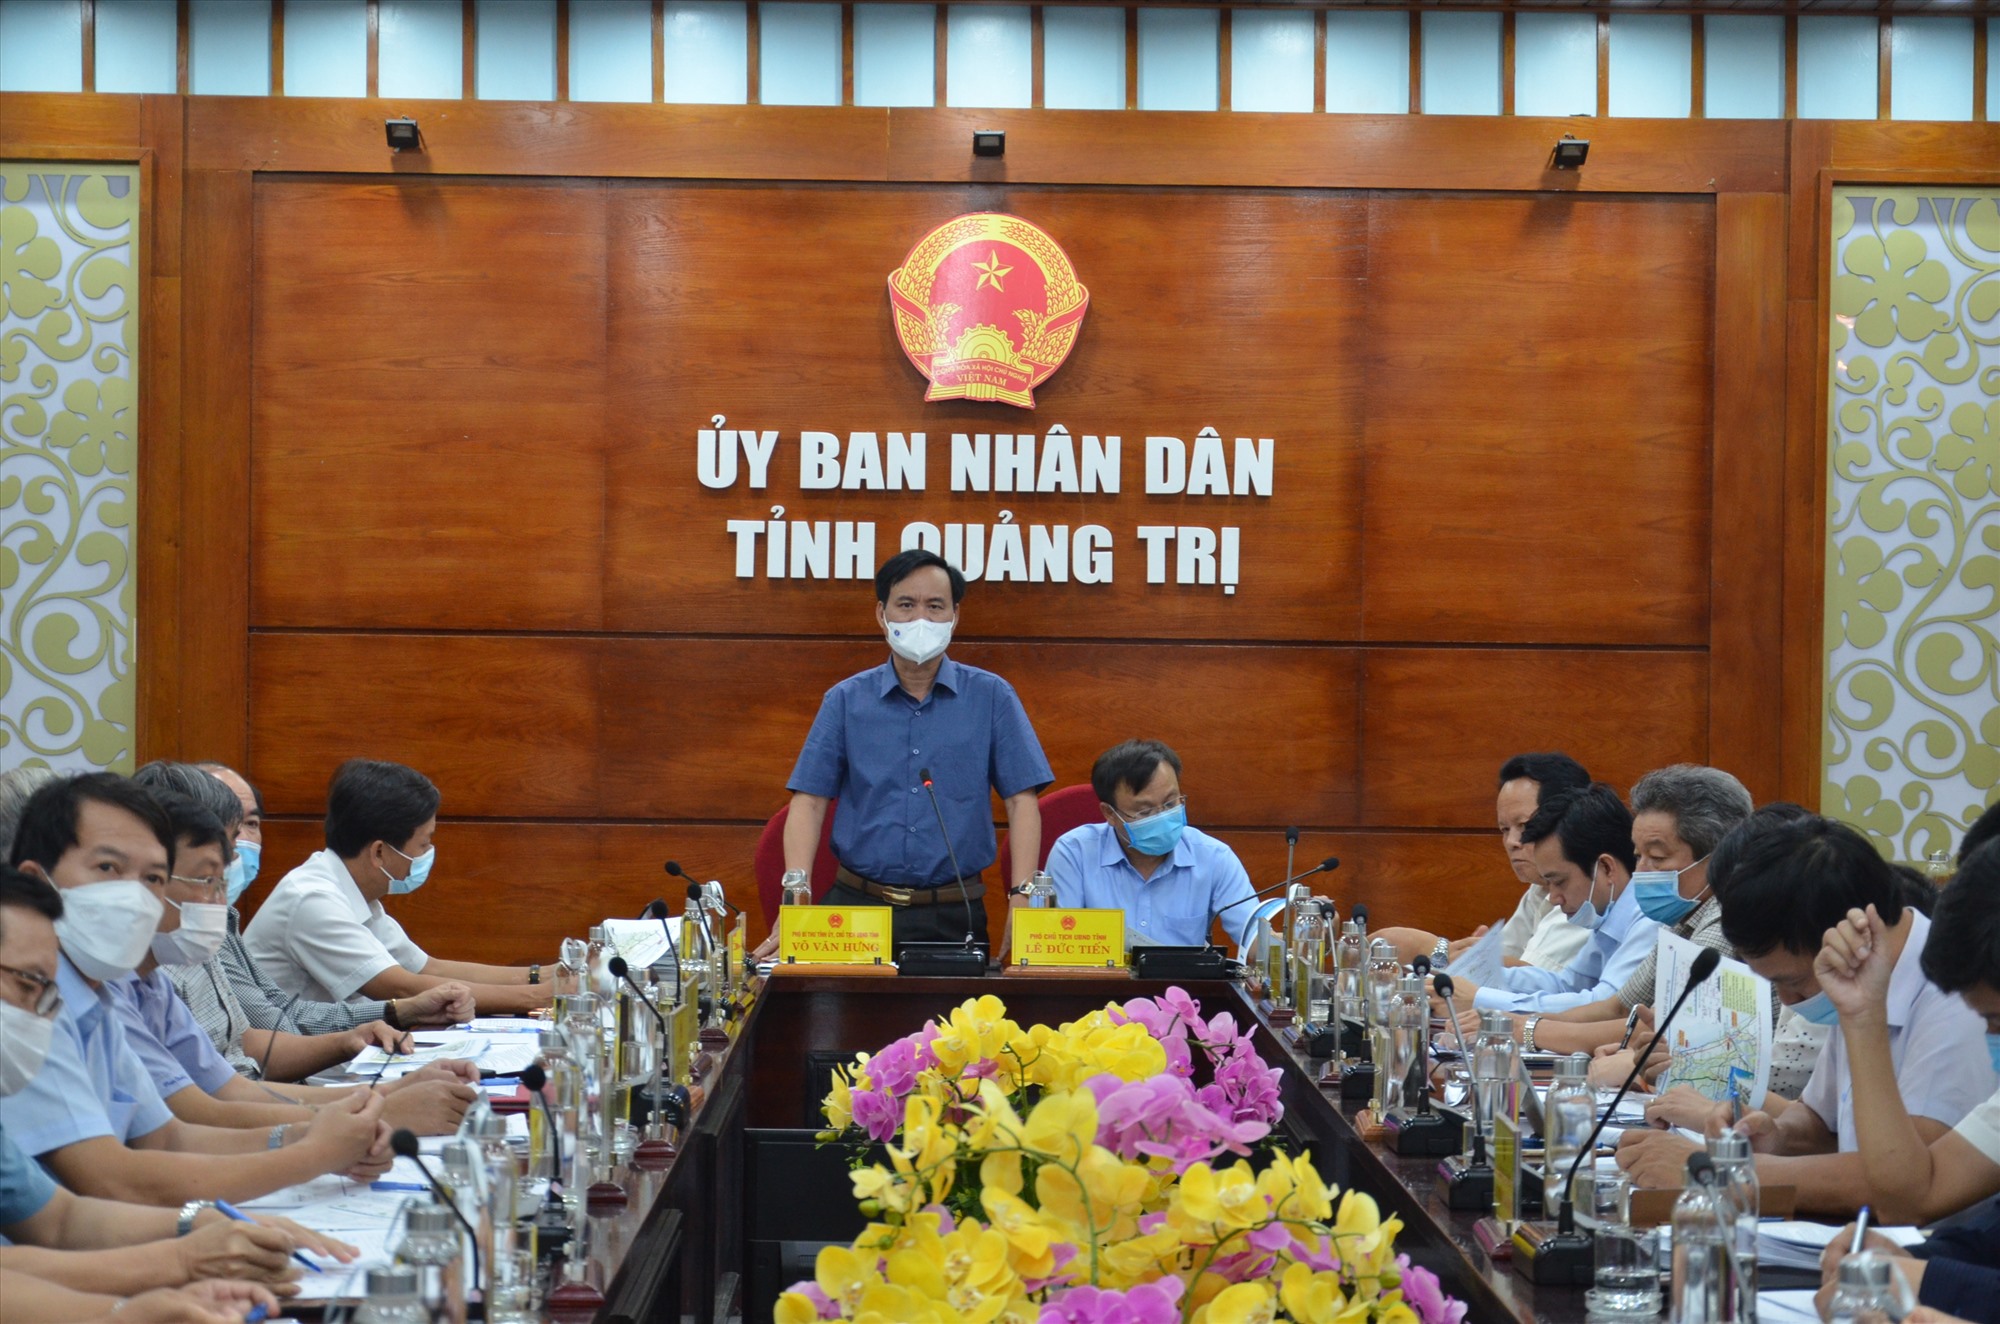 Chủ tịch UBND tỉnh Võ Văn Hưng phát biểu cho ý kiến đối với các dự án giao thông trọng điểm đang triển khai trên địa bàn tỉnh - Ảnh: Lê Minh